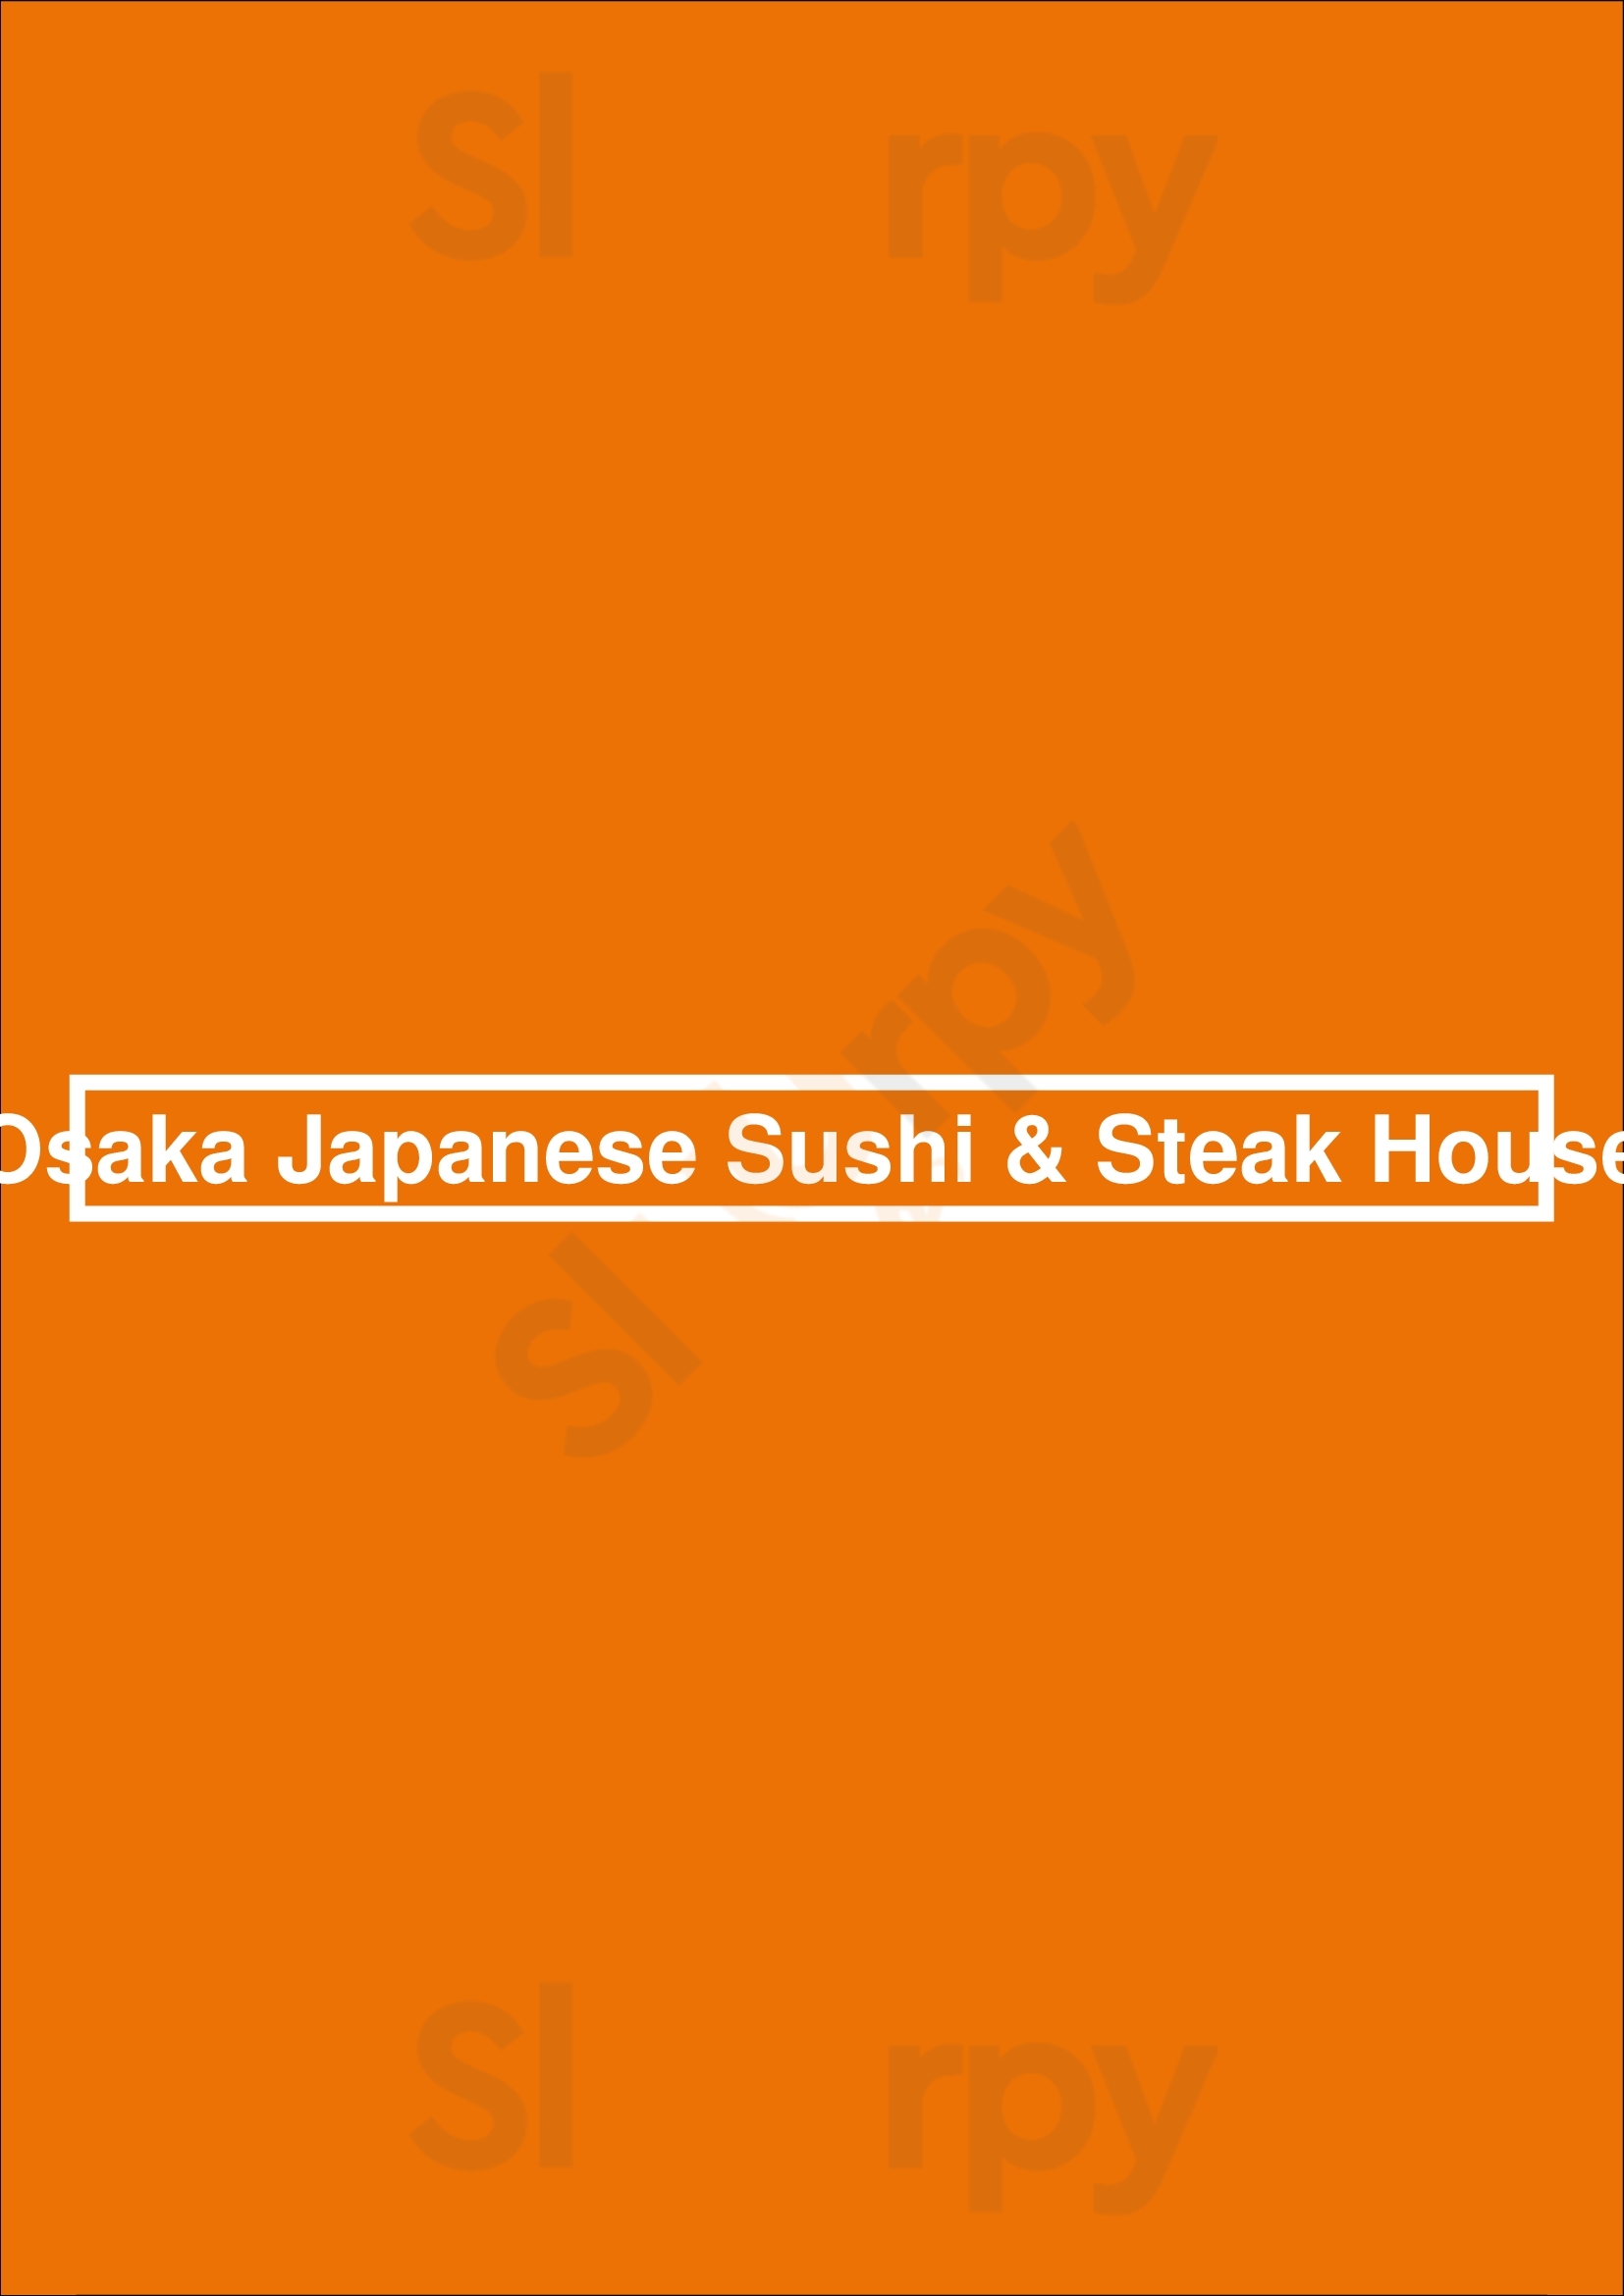 Osaka Japanese Sushi & Steak House Brookline Menu - 1